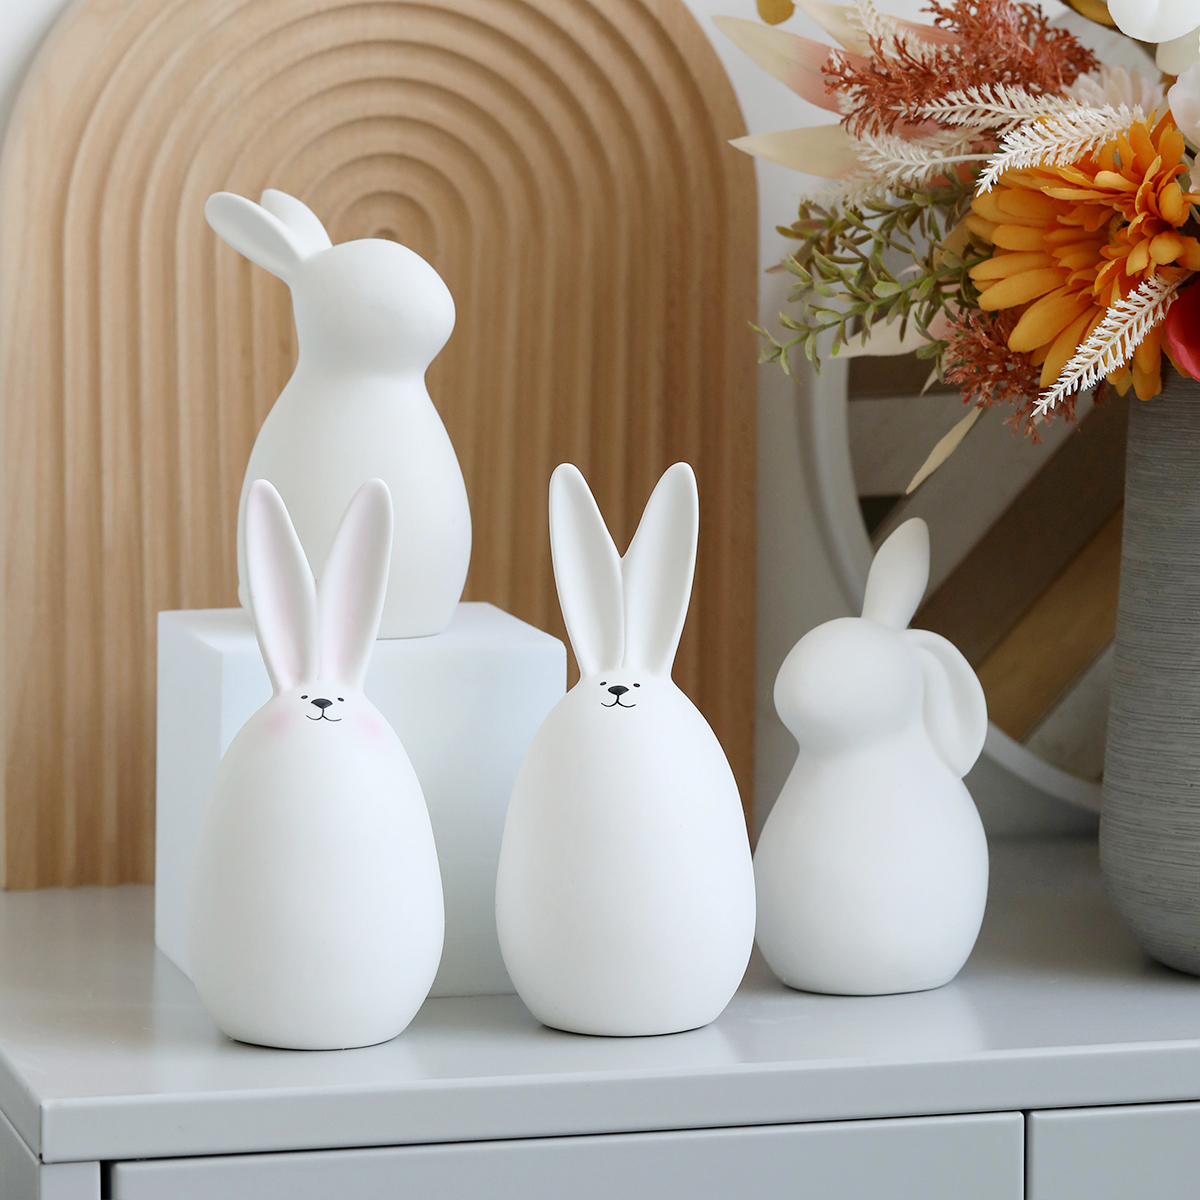 创意陶瓷兔子摆件家居饰品ins风格可爱简约现代客厅酒柜礼物工艺